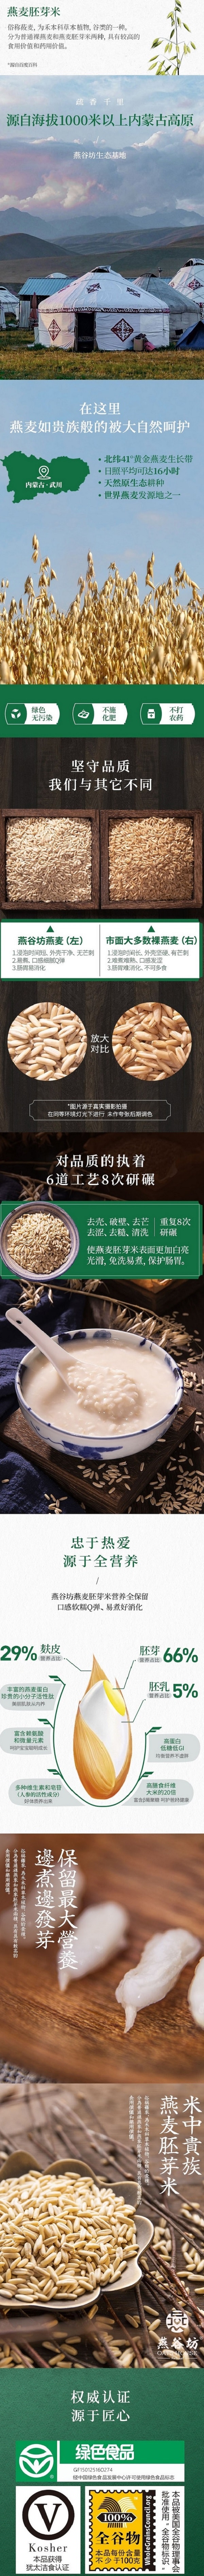 中国 燕谷坊OATS HOUSE 燕麦胚芽米 绿色有机 内蒙古高原全谷物裸燕麦 燕麦粥 美味杂粮饭400g 否